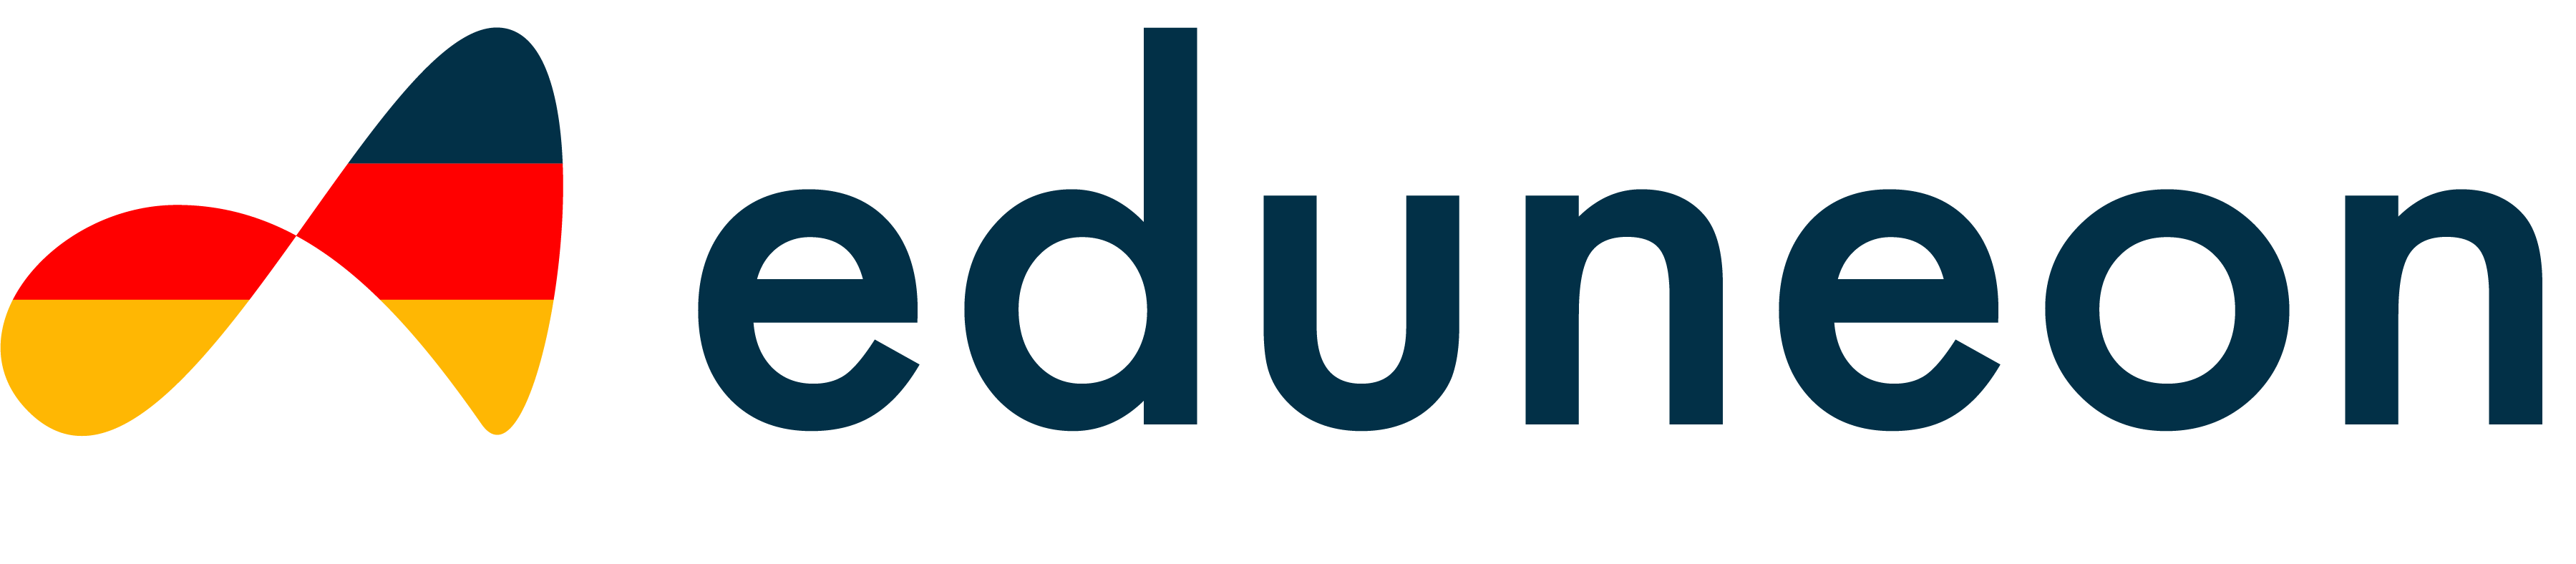 Eduneon Logo (png)